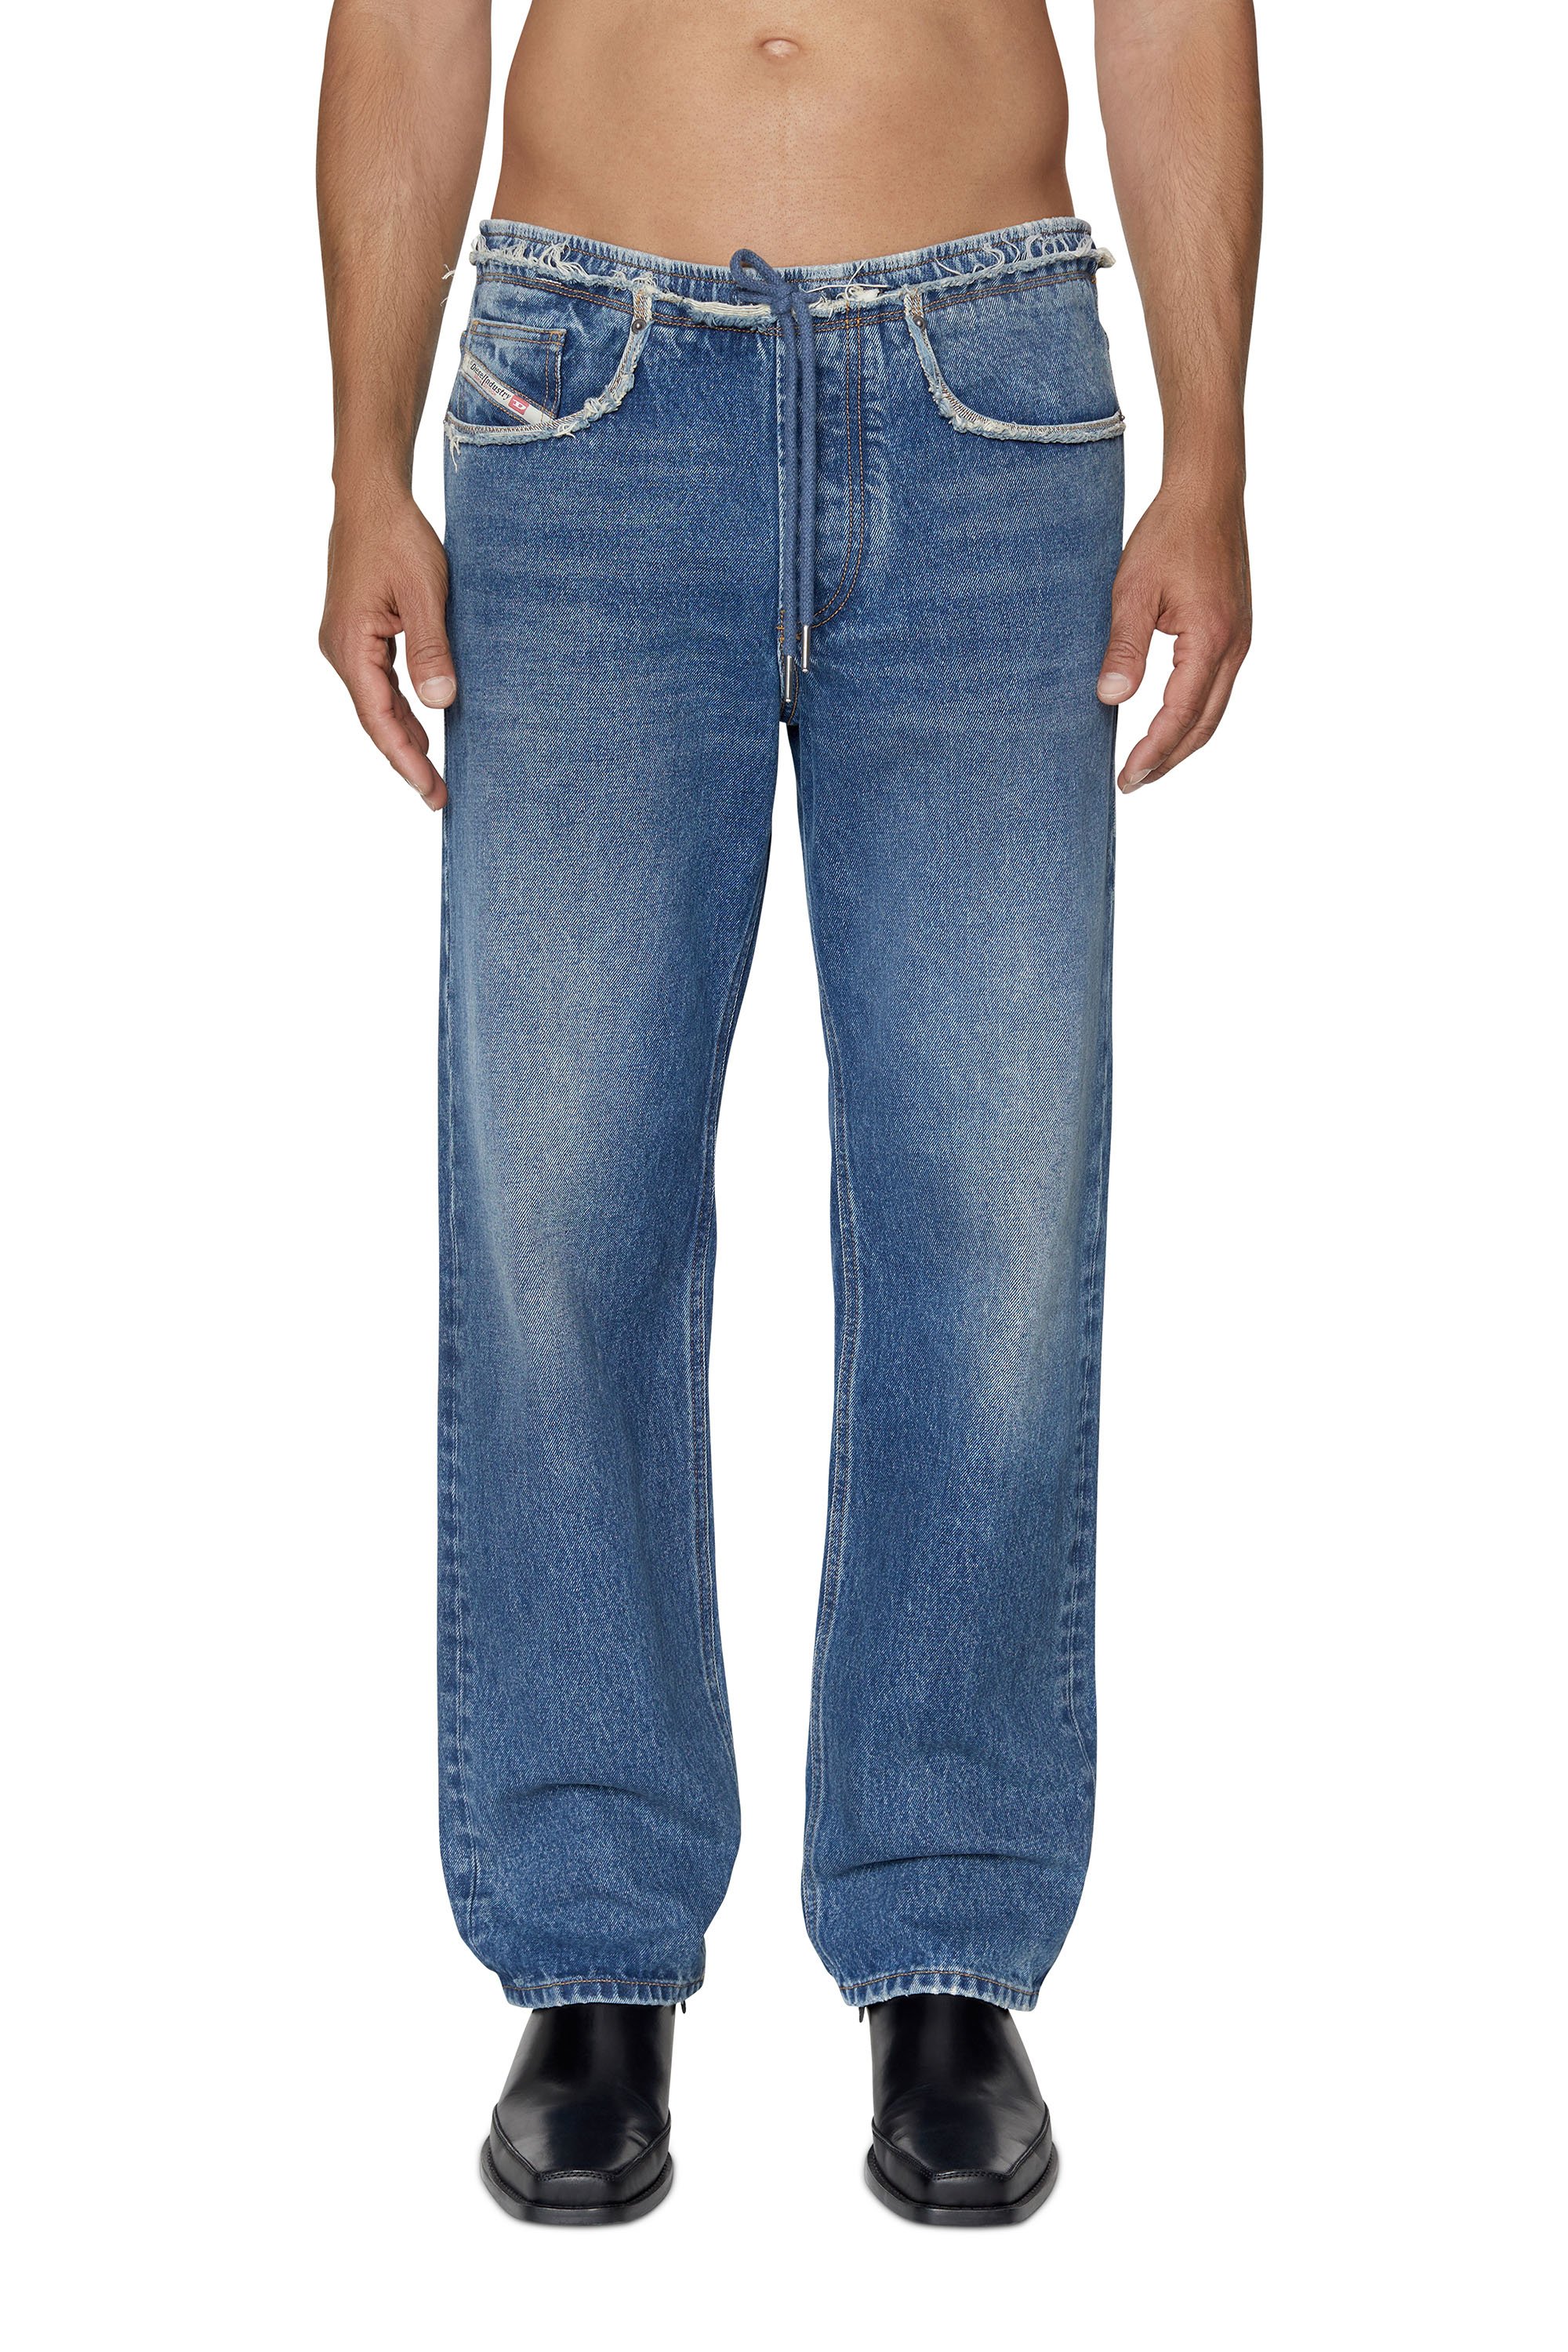 D-Sert 007F2 Straight Jeans, Bleu moyen - Jeans